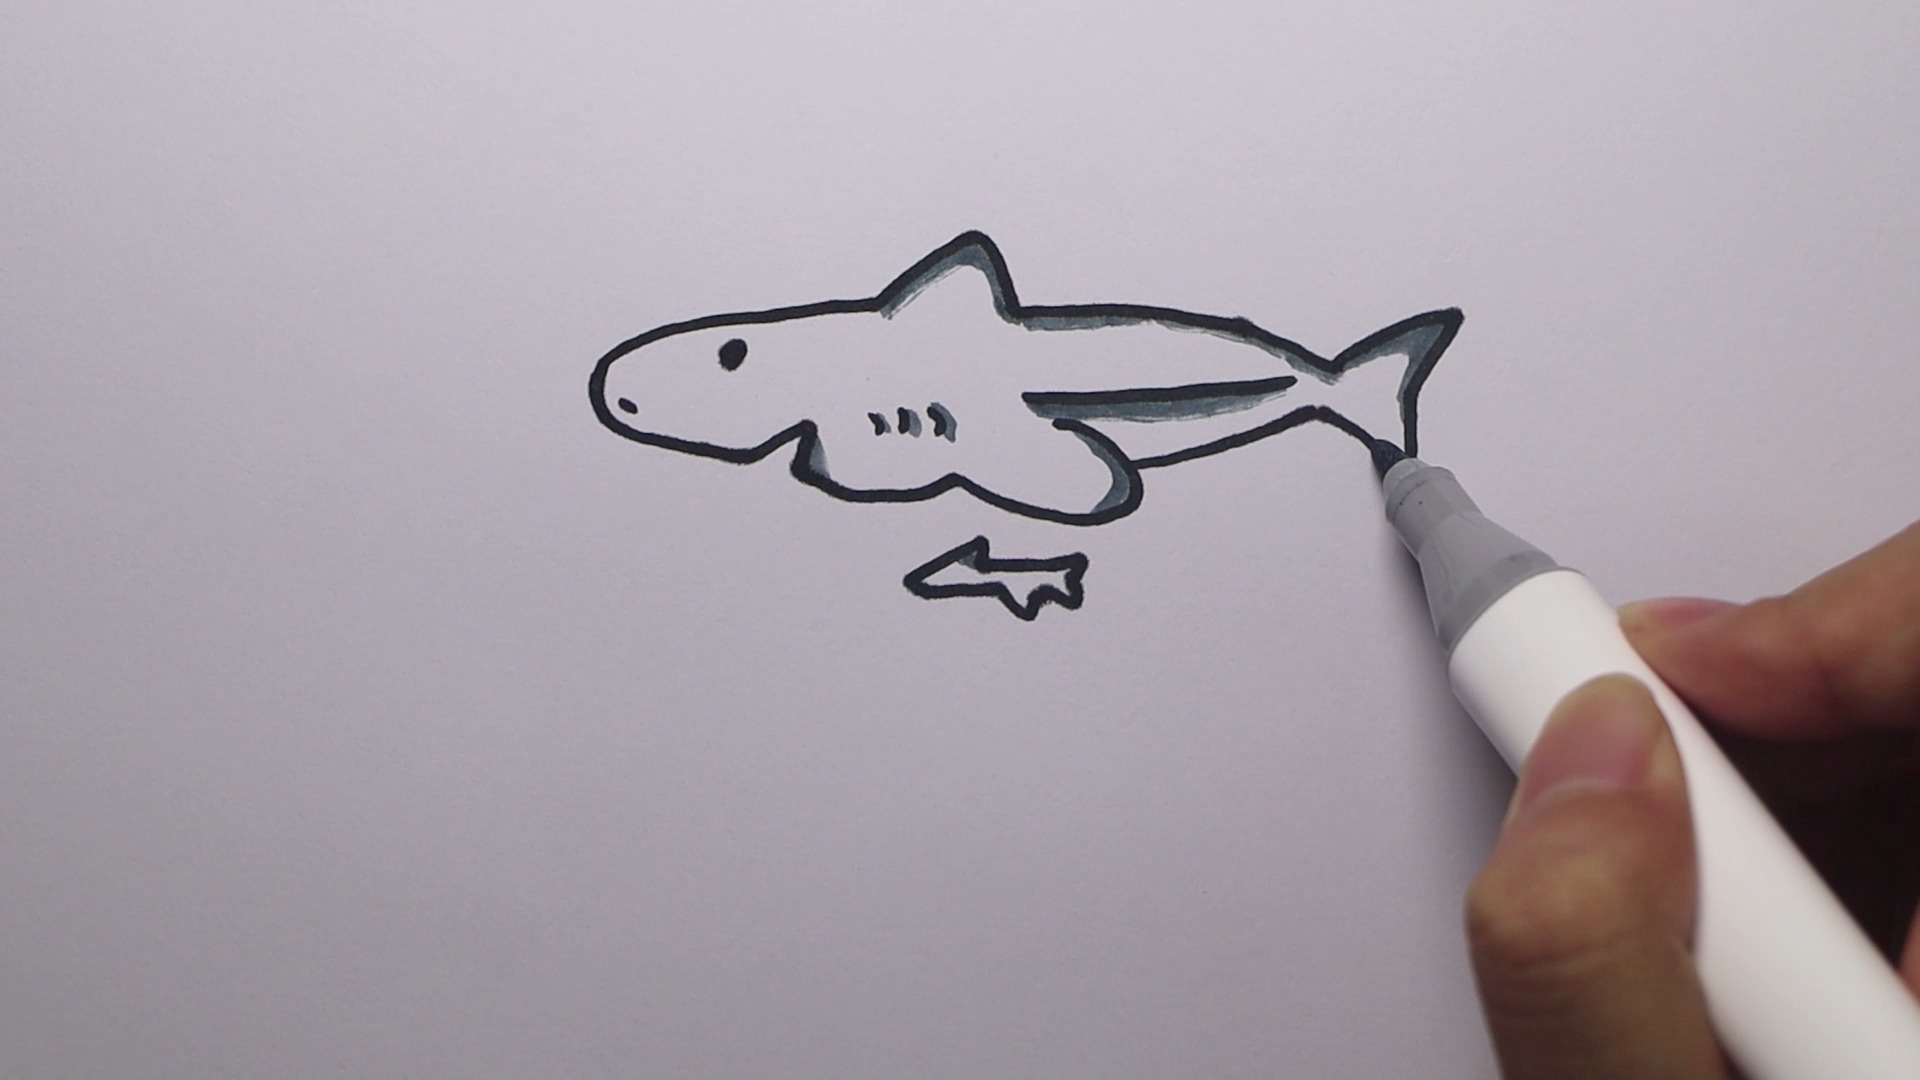 僵尸鲨鱼怎么画大白鲨图片